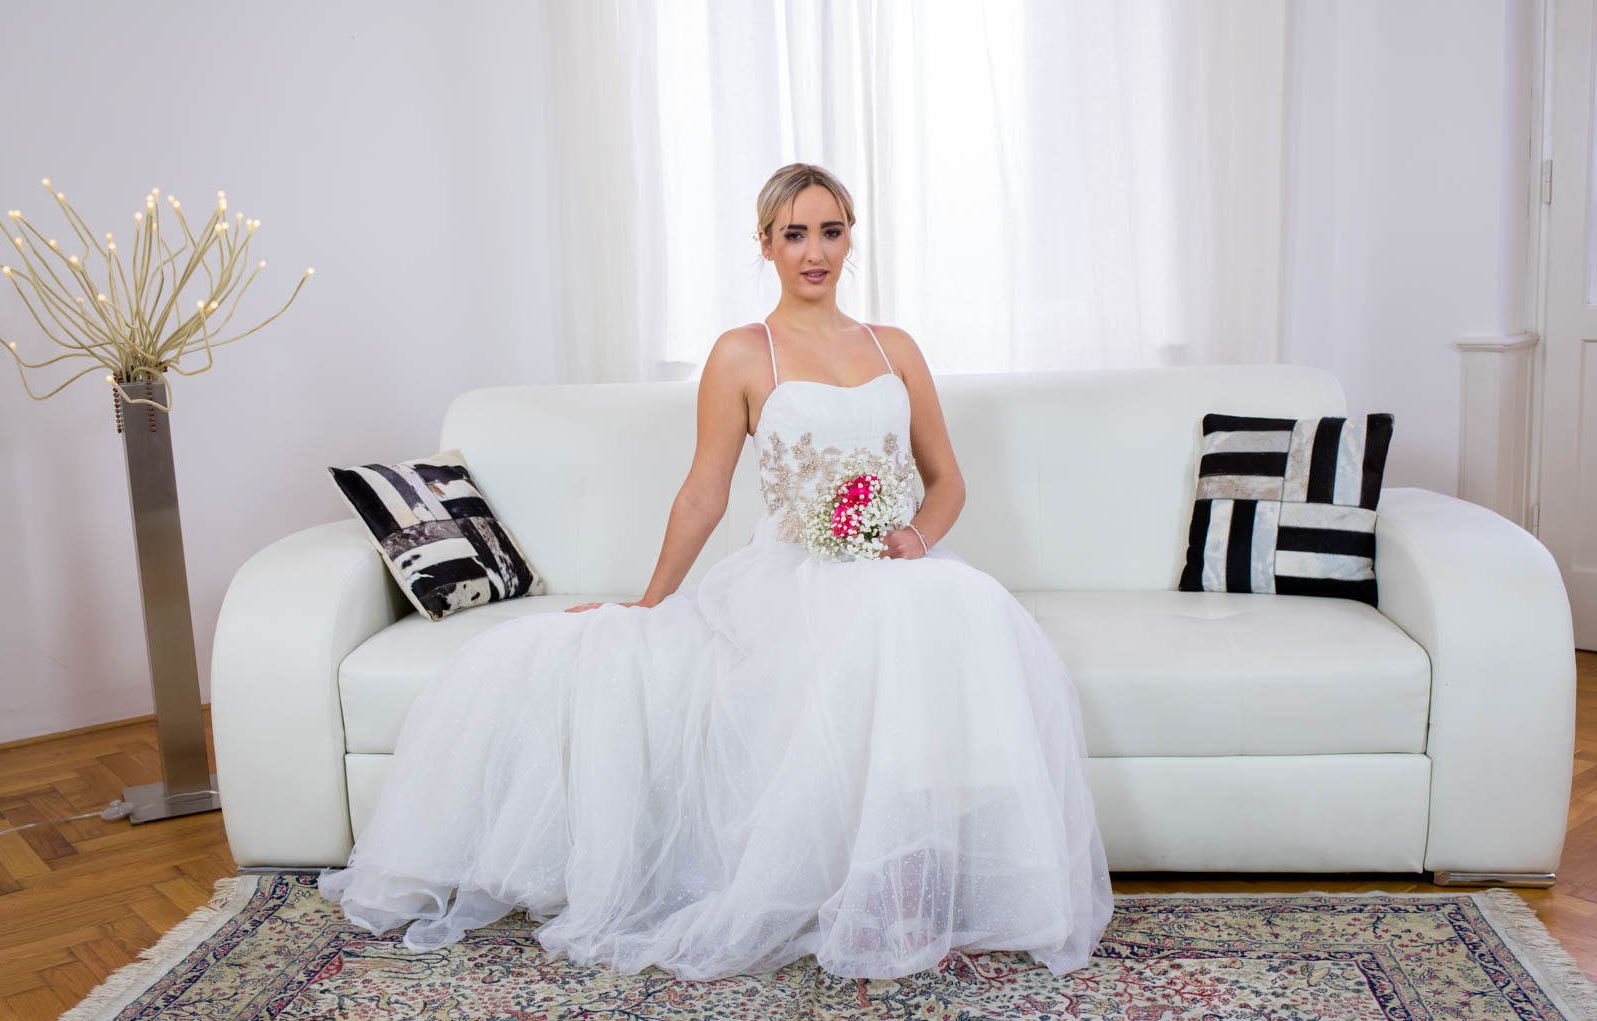 Невеста изменила мужу на свадьбе в свадебном платье: смотреть русское порно видео онлайн бесплатно